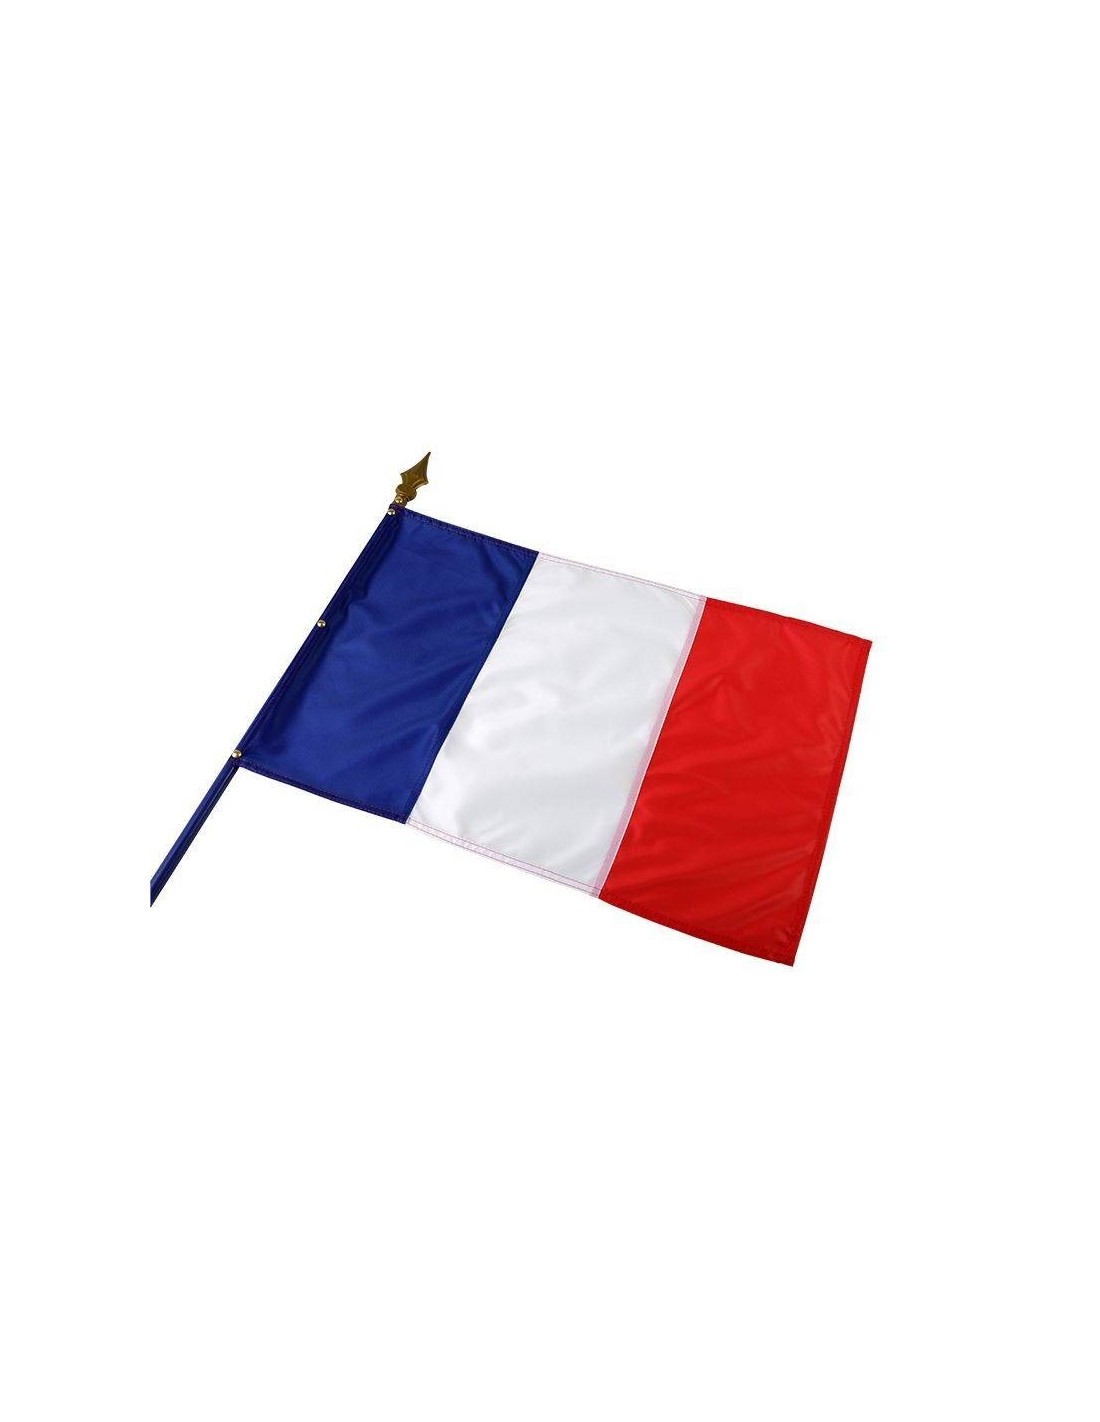 Achetez La Récompense Parfaite : Drapeau France Impression - Fdi4060